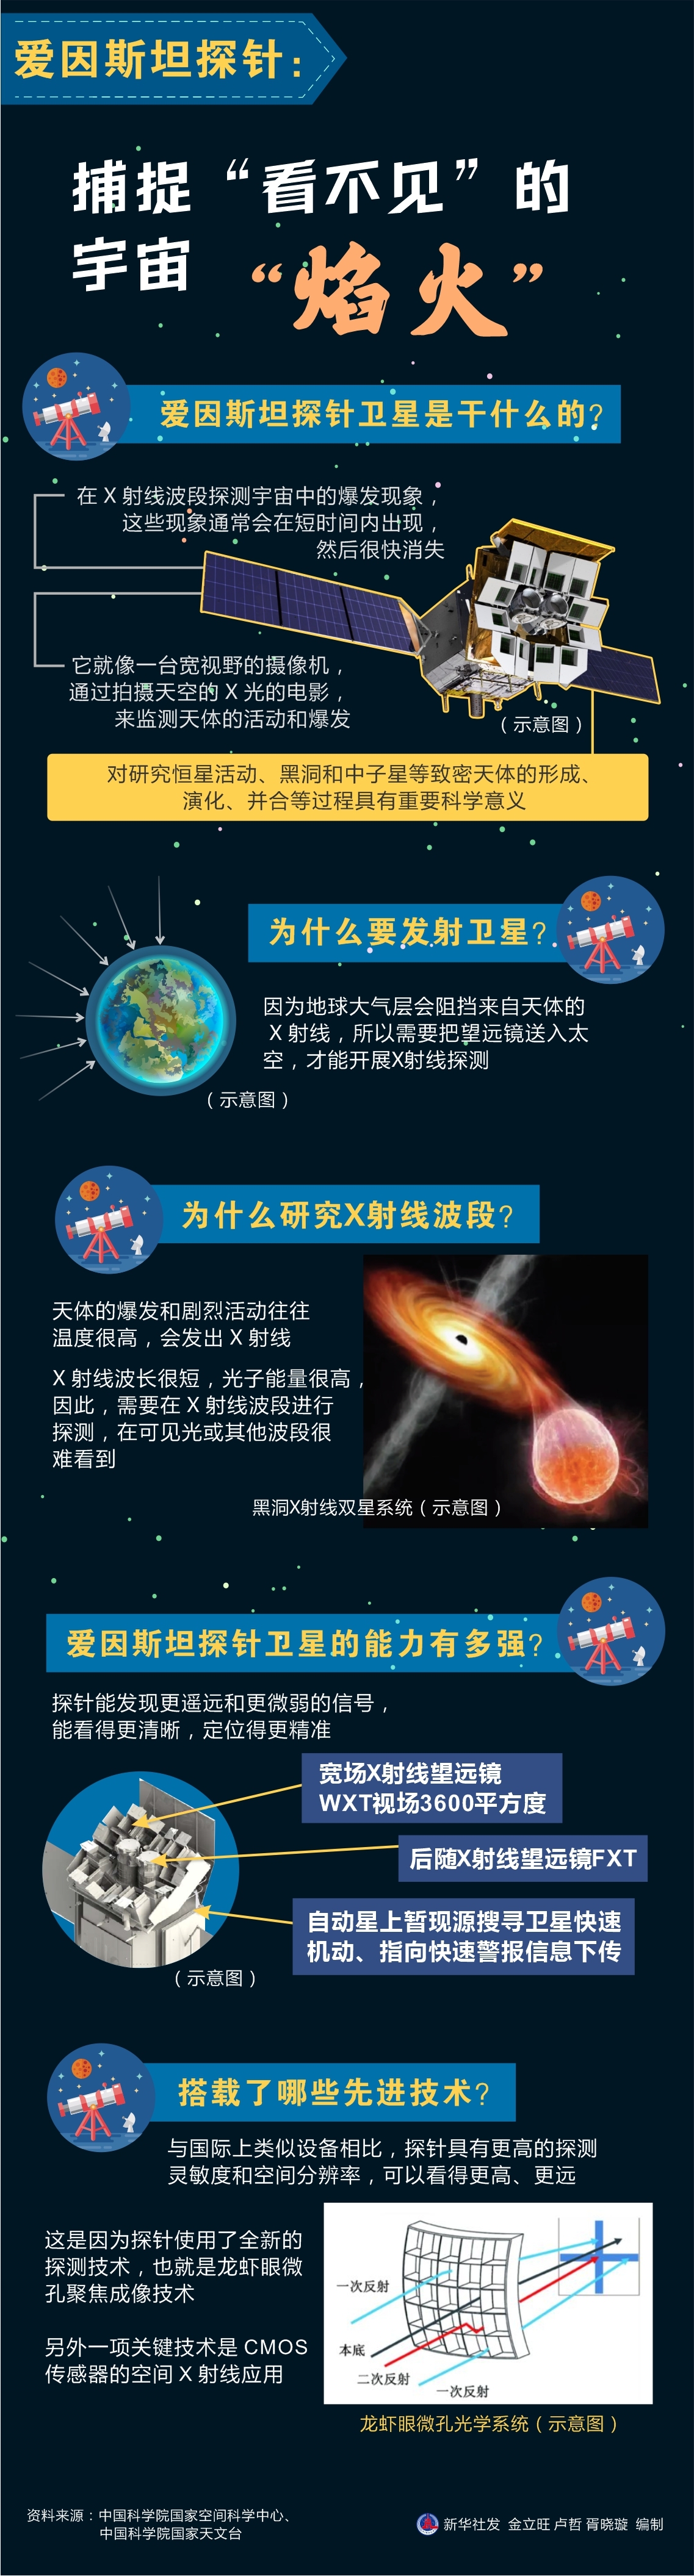 中国成功发射爱因斯坦探针卫星